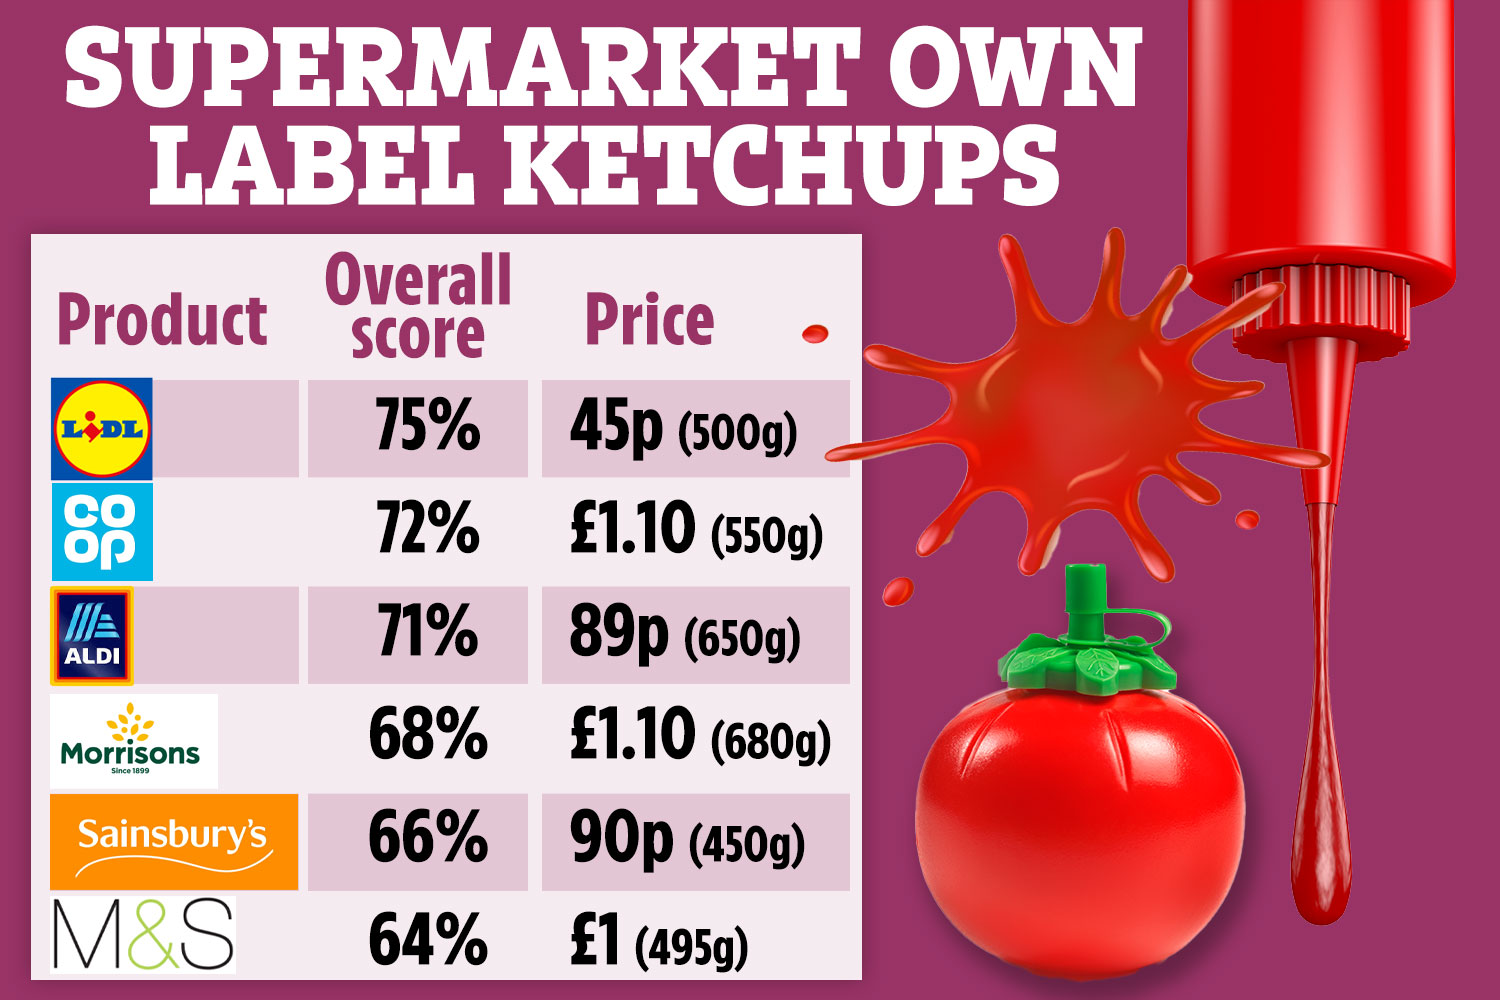 Lidl schlug alle anderen Supermärkte bei den besten Ketchups seiner Eigenmarke